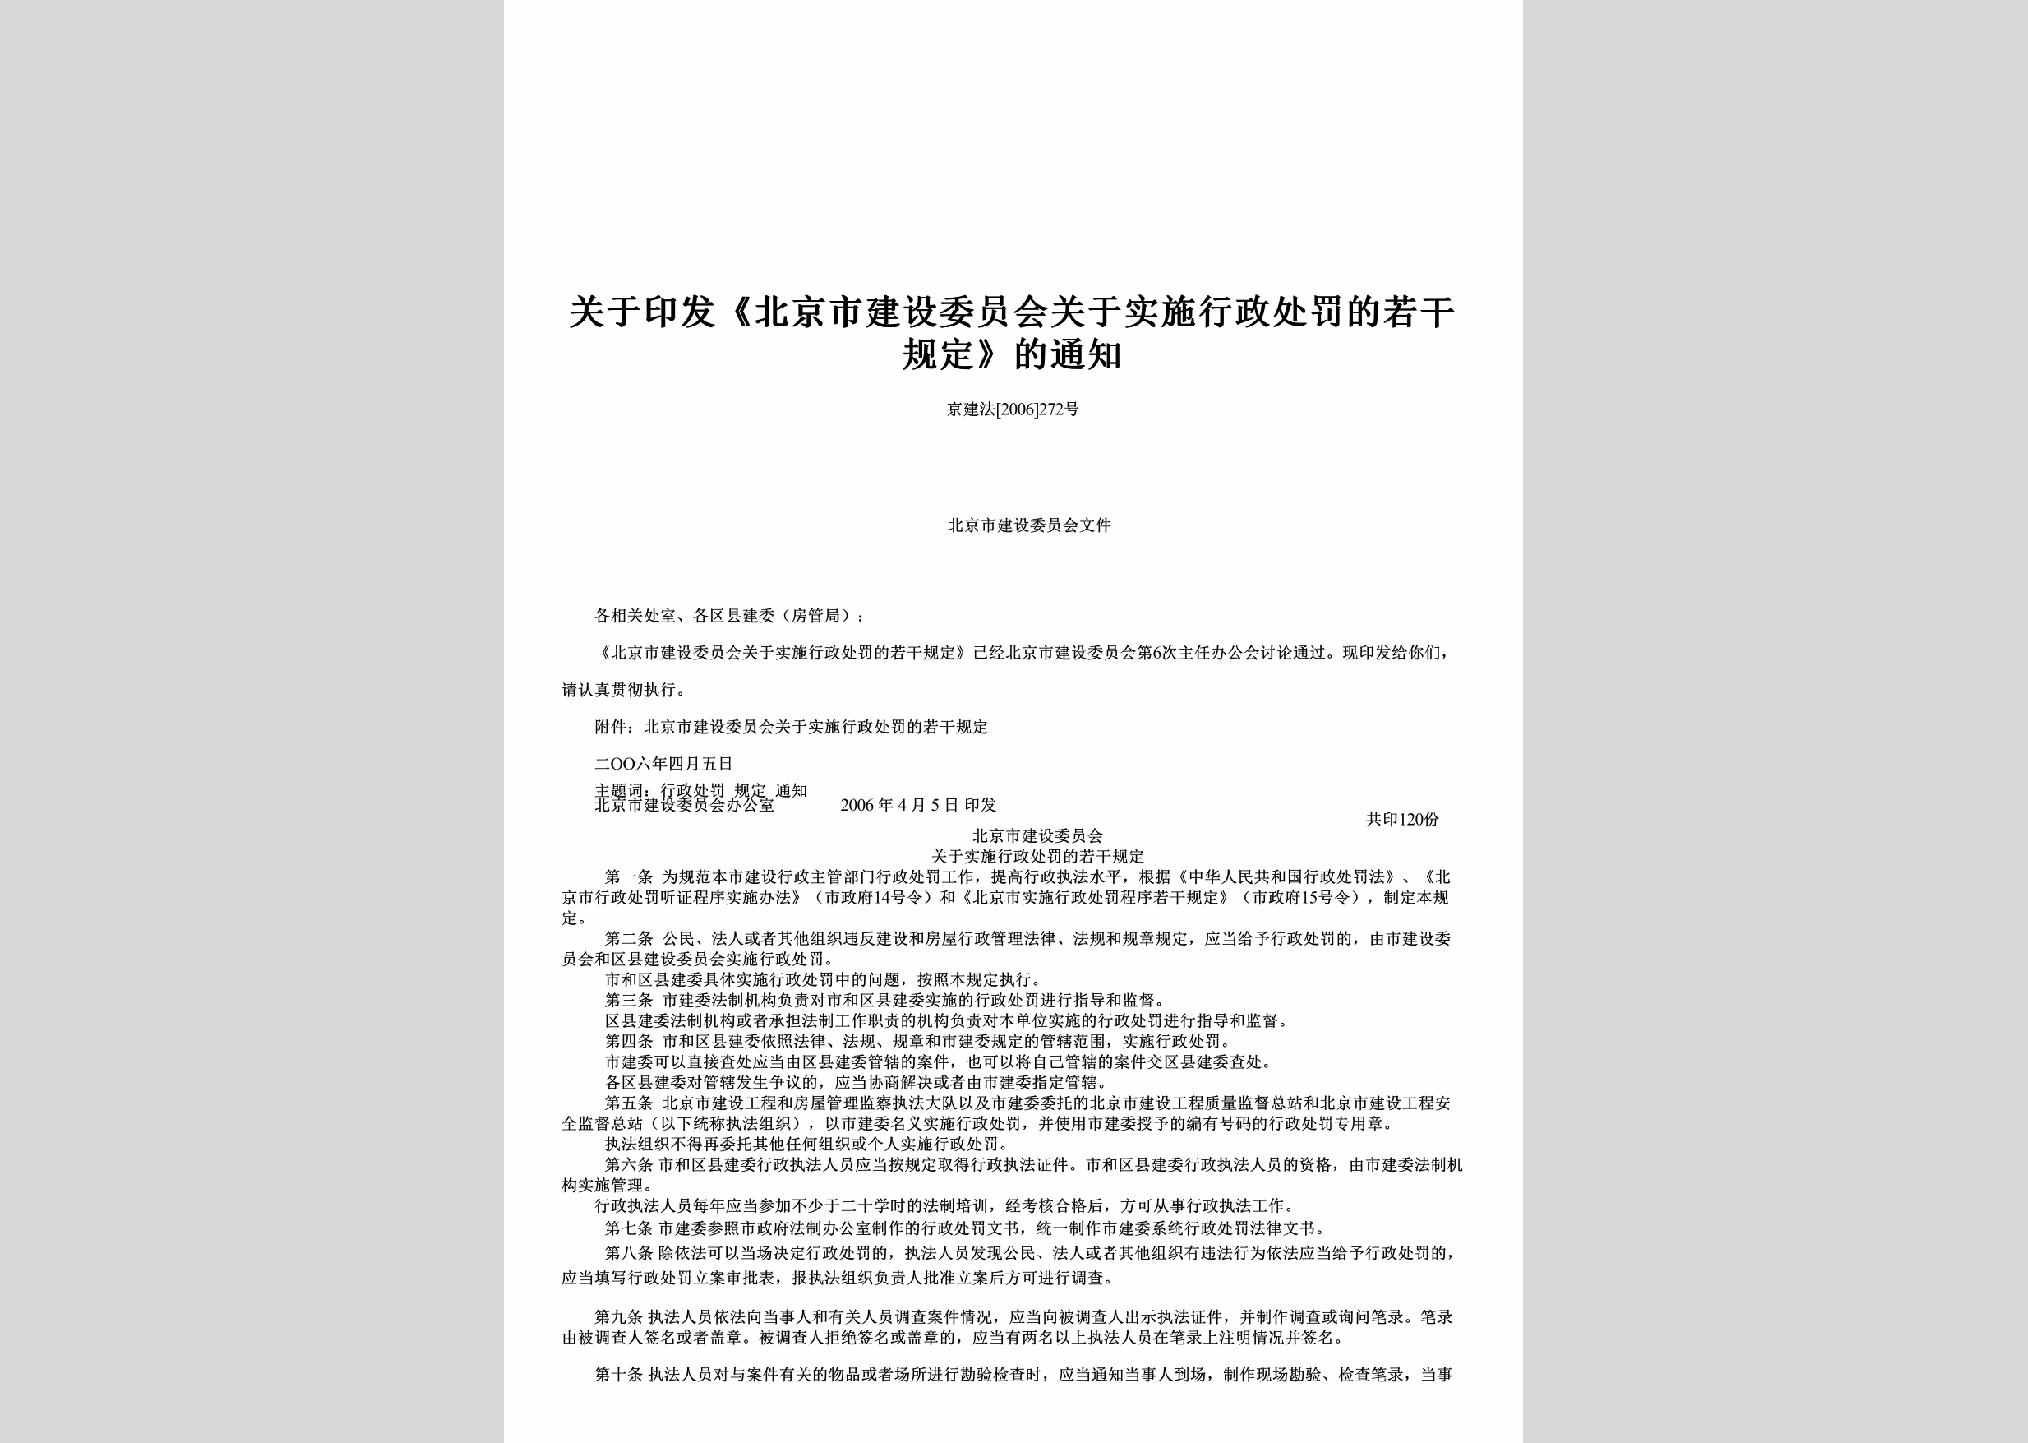 京建法[2006]272号：关于印发《北京市建设委员会关于实施行政处罚的若干规定》的通知